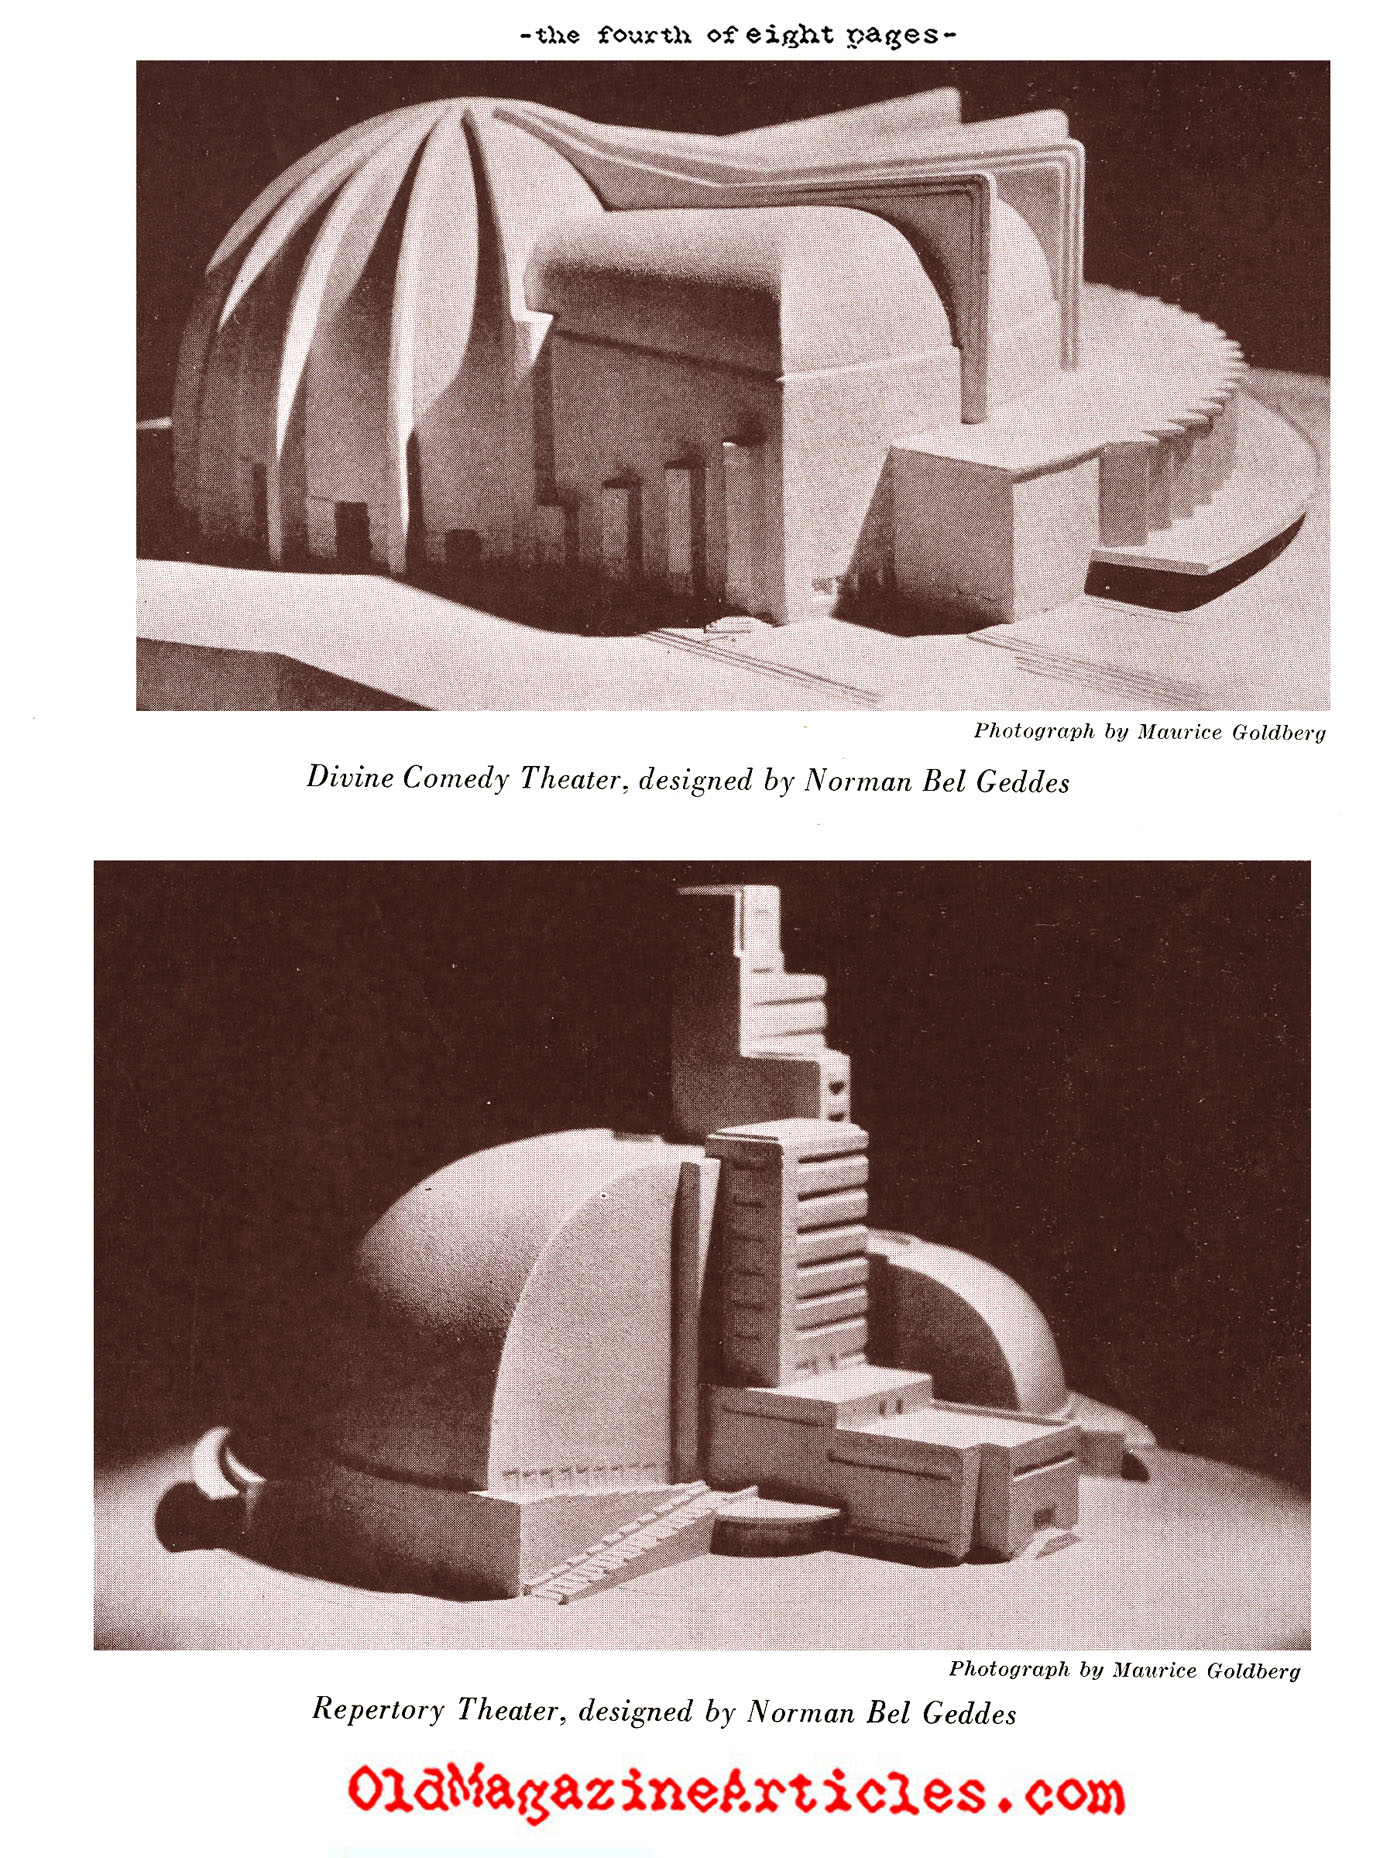 Norman Bel Geddes (Creative Art Magazine, 1933)